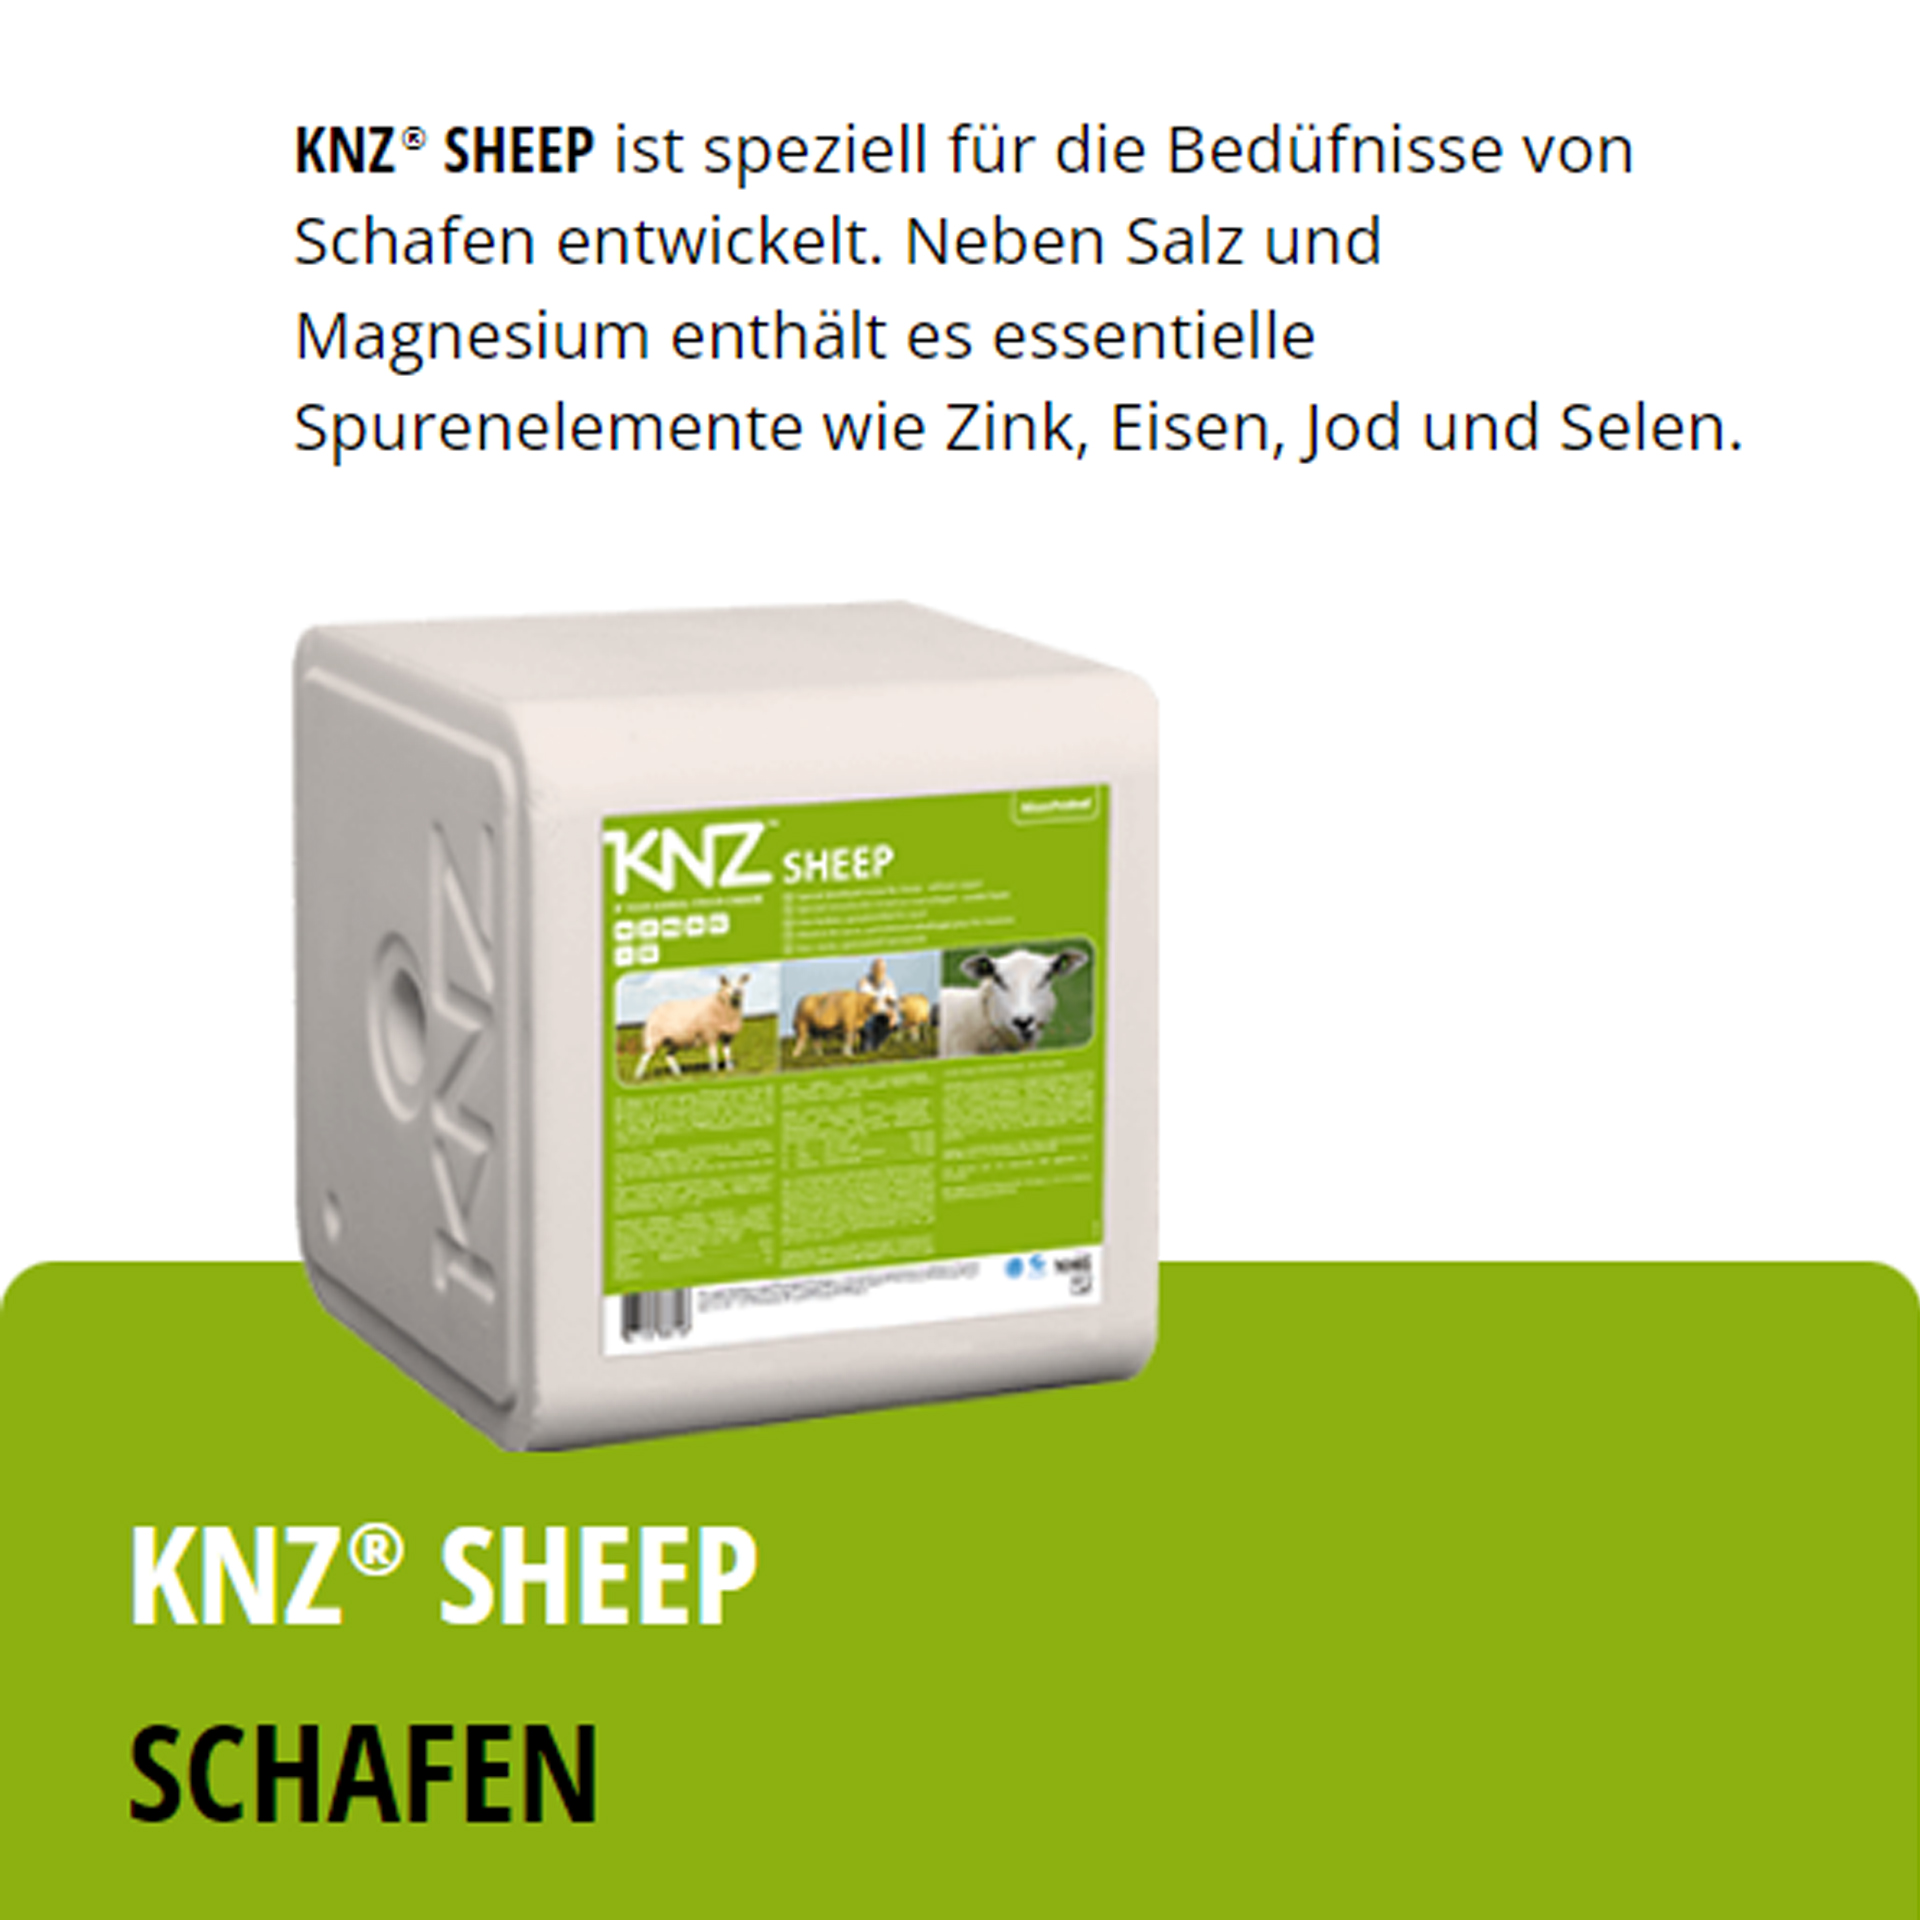 KNZ Sheep 40 kg Salzlecksteine Schafe